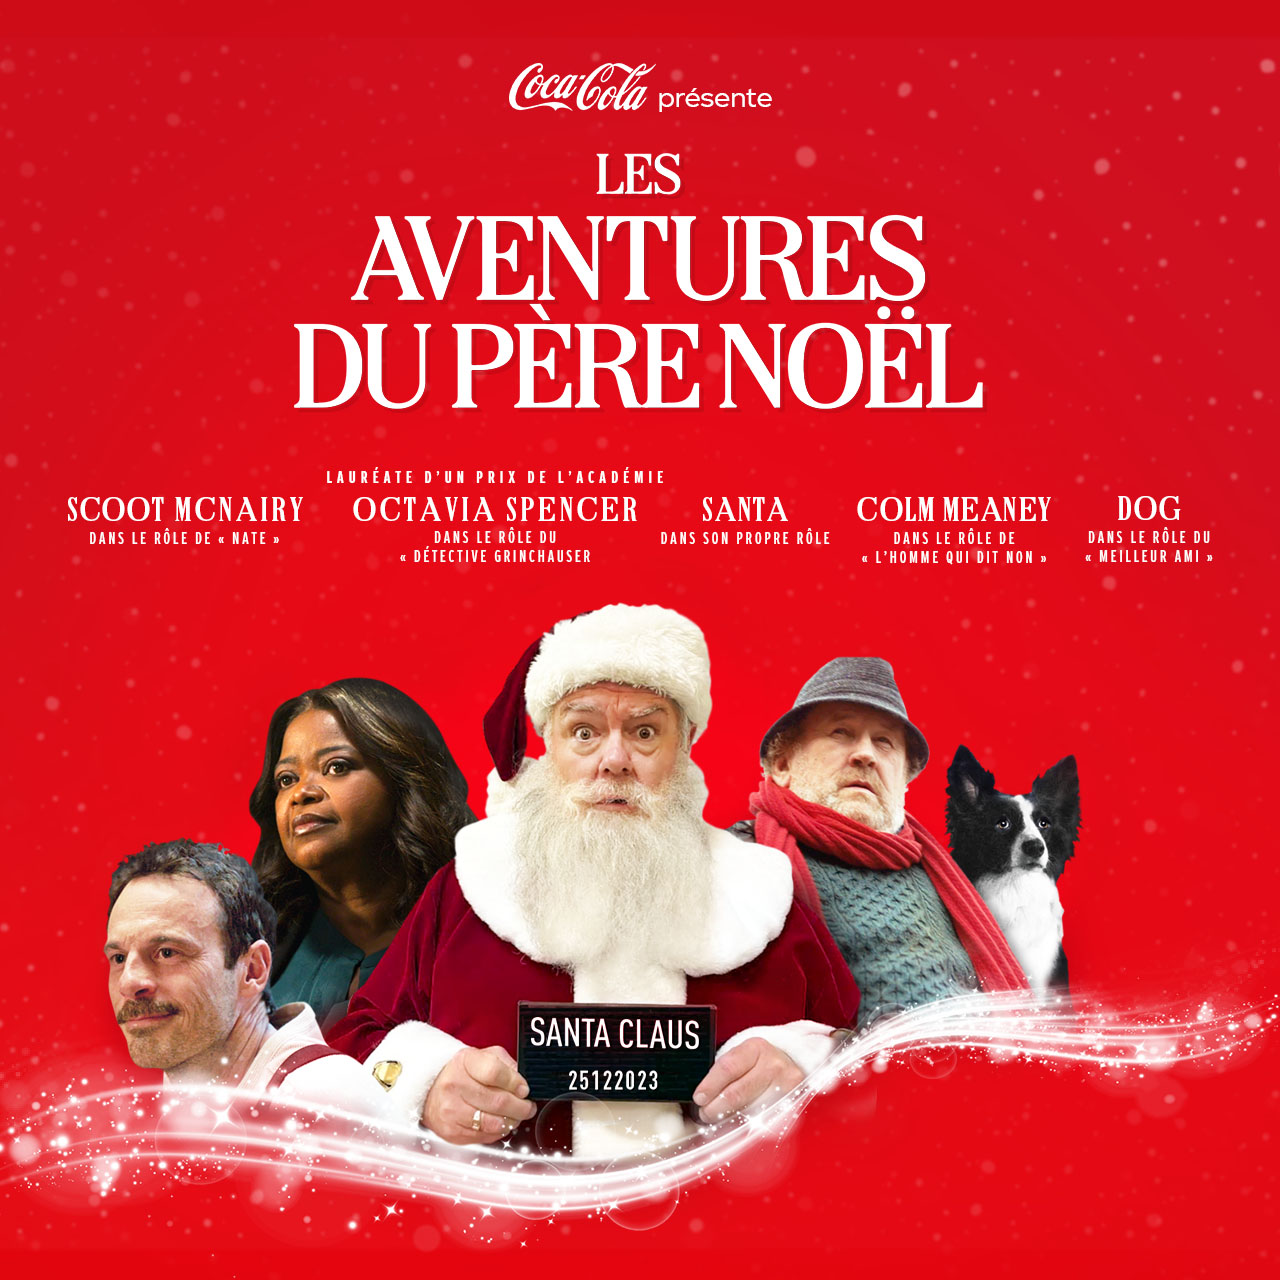 Coca-Cola présente Les aventures du Père Noël